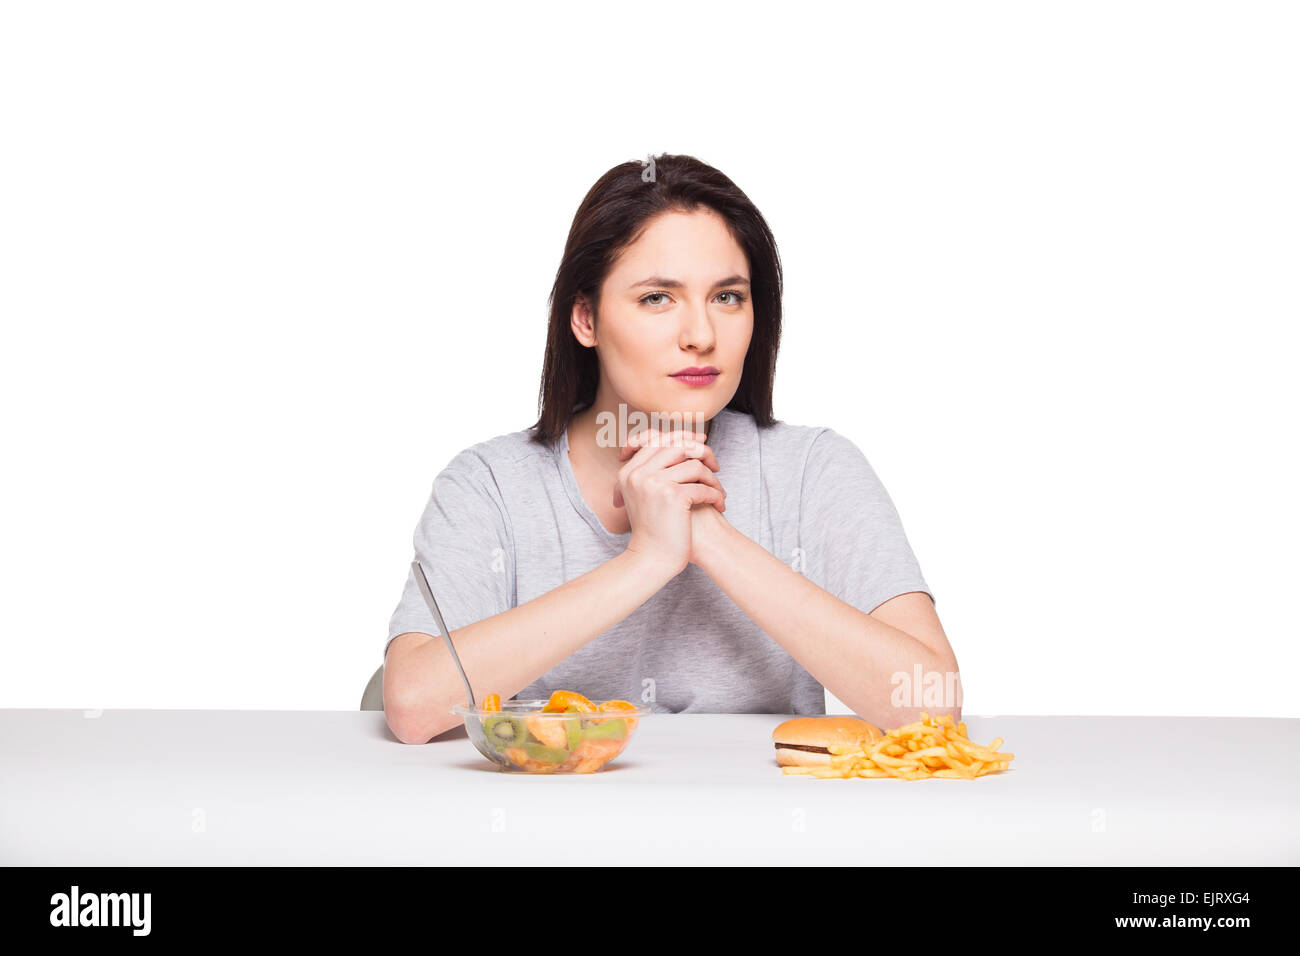 Immagine di donna con frutta e hamburger davanti a pensare a scelta su sfondo bianco, sano versus junk food concept Foto Stock